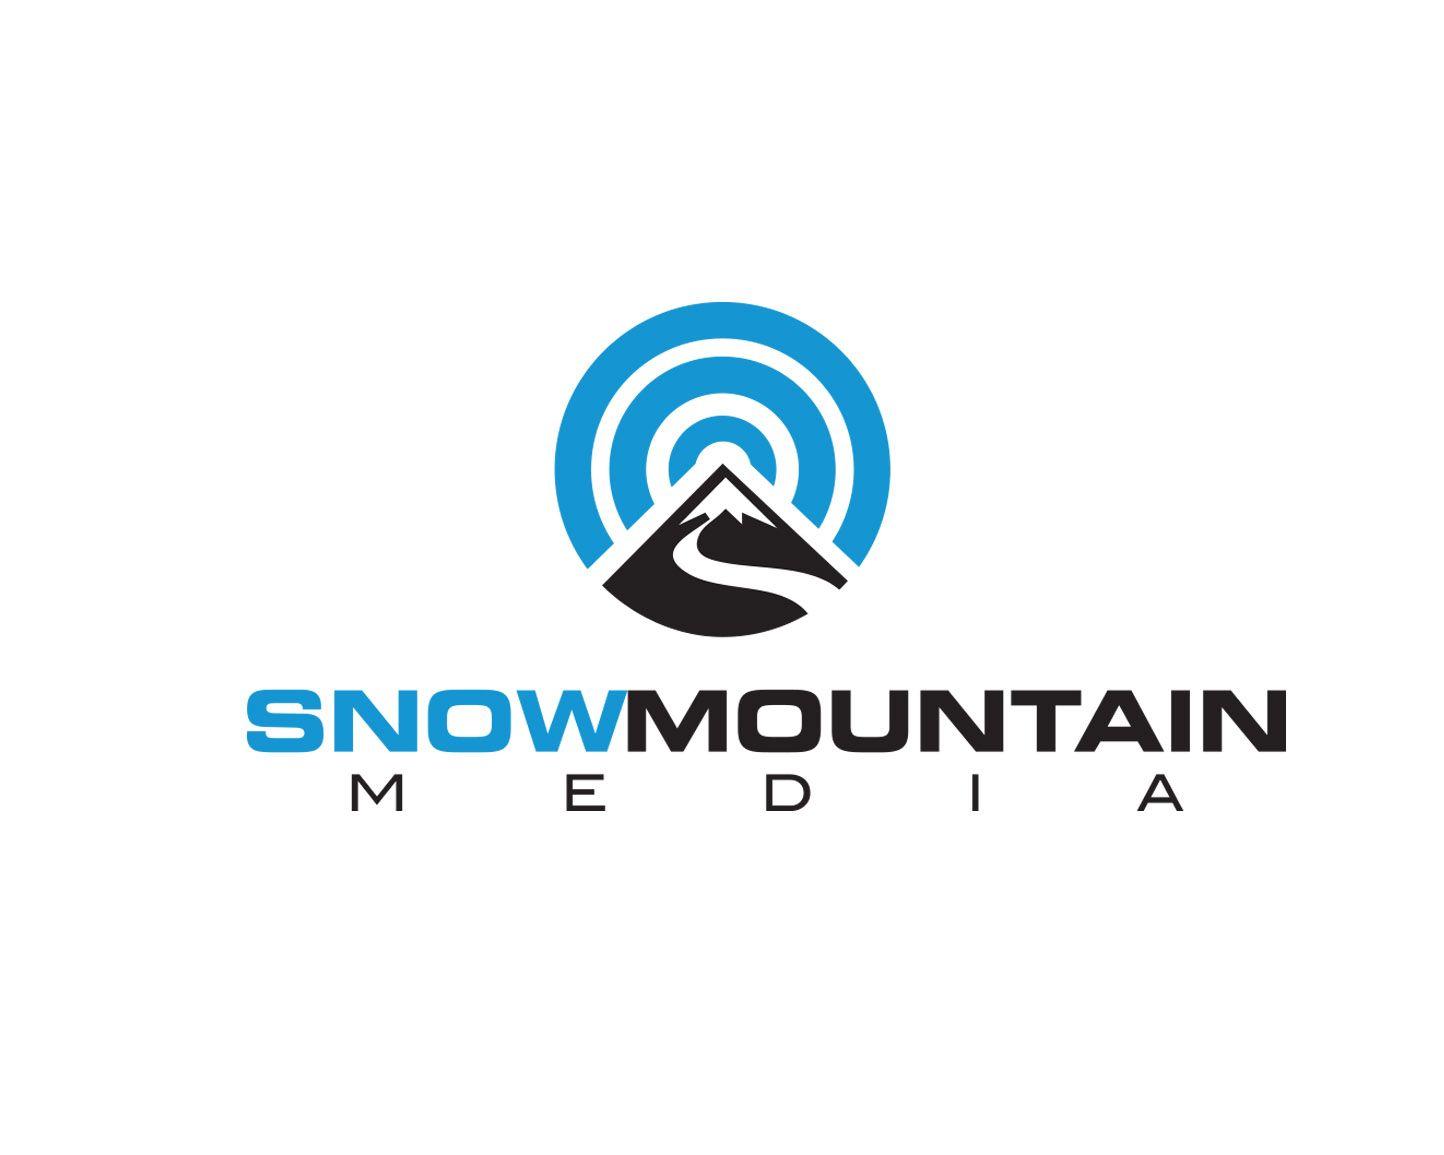 Snow Mountain Logo - Logo Design Contest for Snow mountain media | Hatchwise